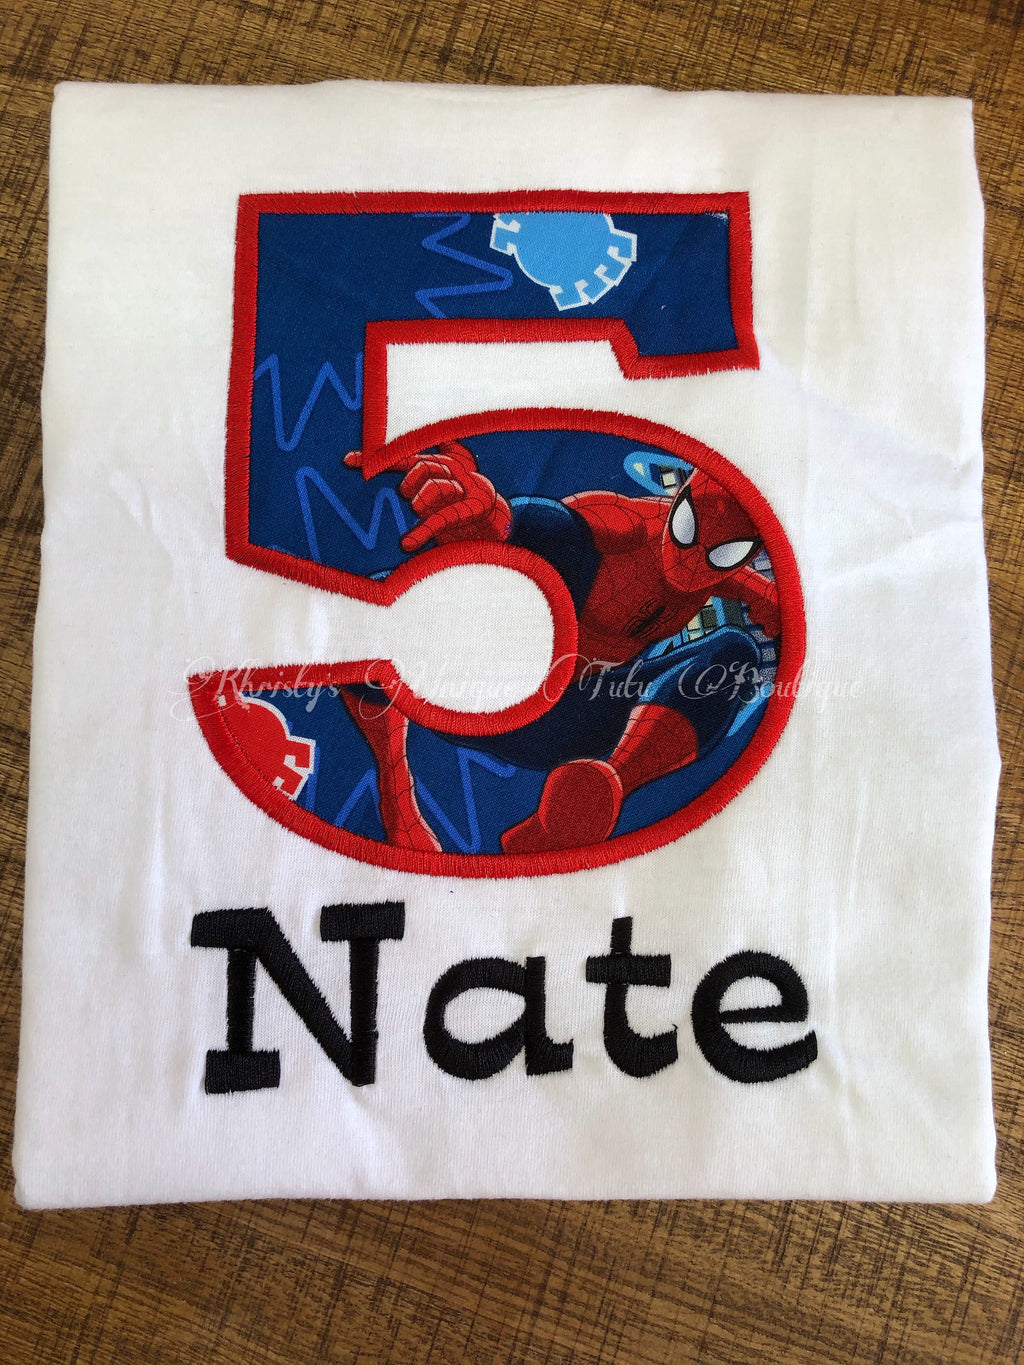 Camiseta Spiderman Cumpleaños personalizada con nombre y edad, bordada | Camiseta de hombre araña para niño, camiseta de cumpleaños de hombre araña para niño